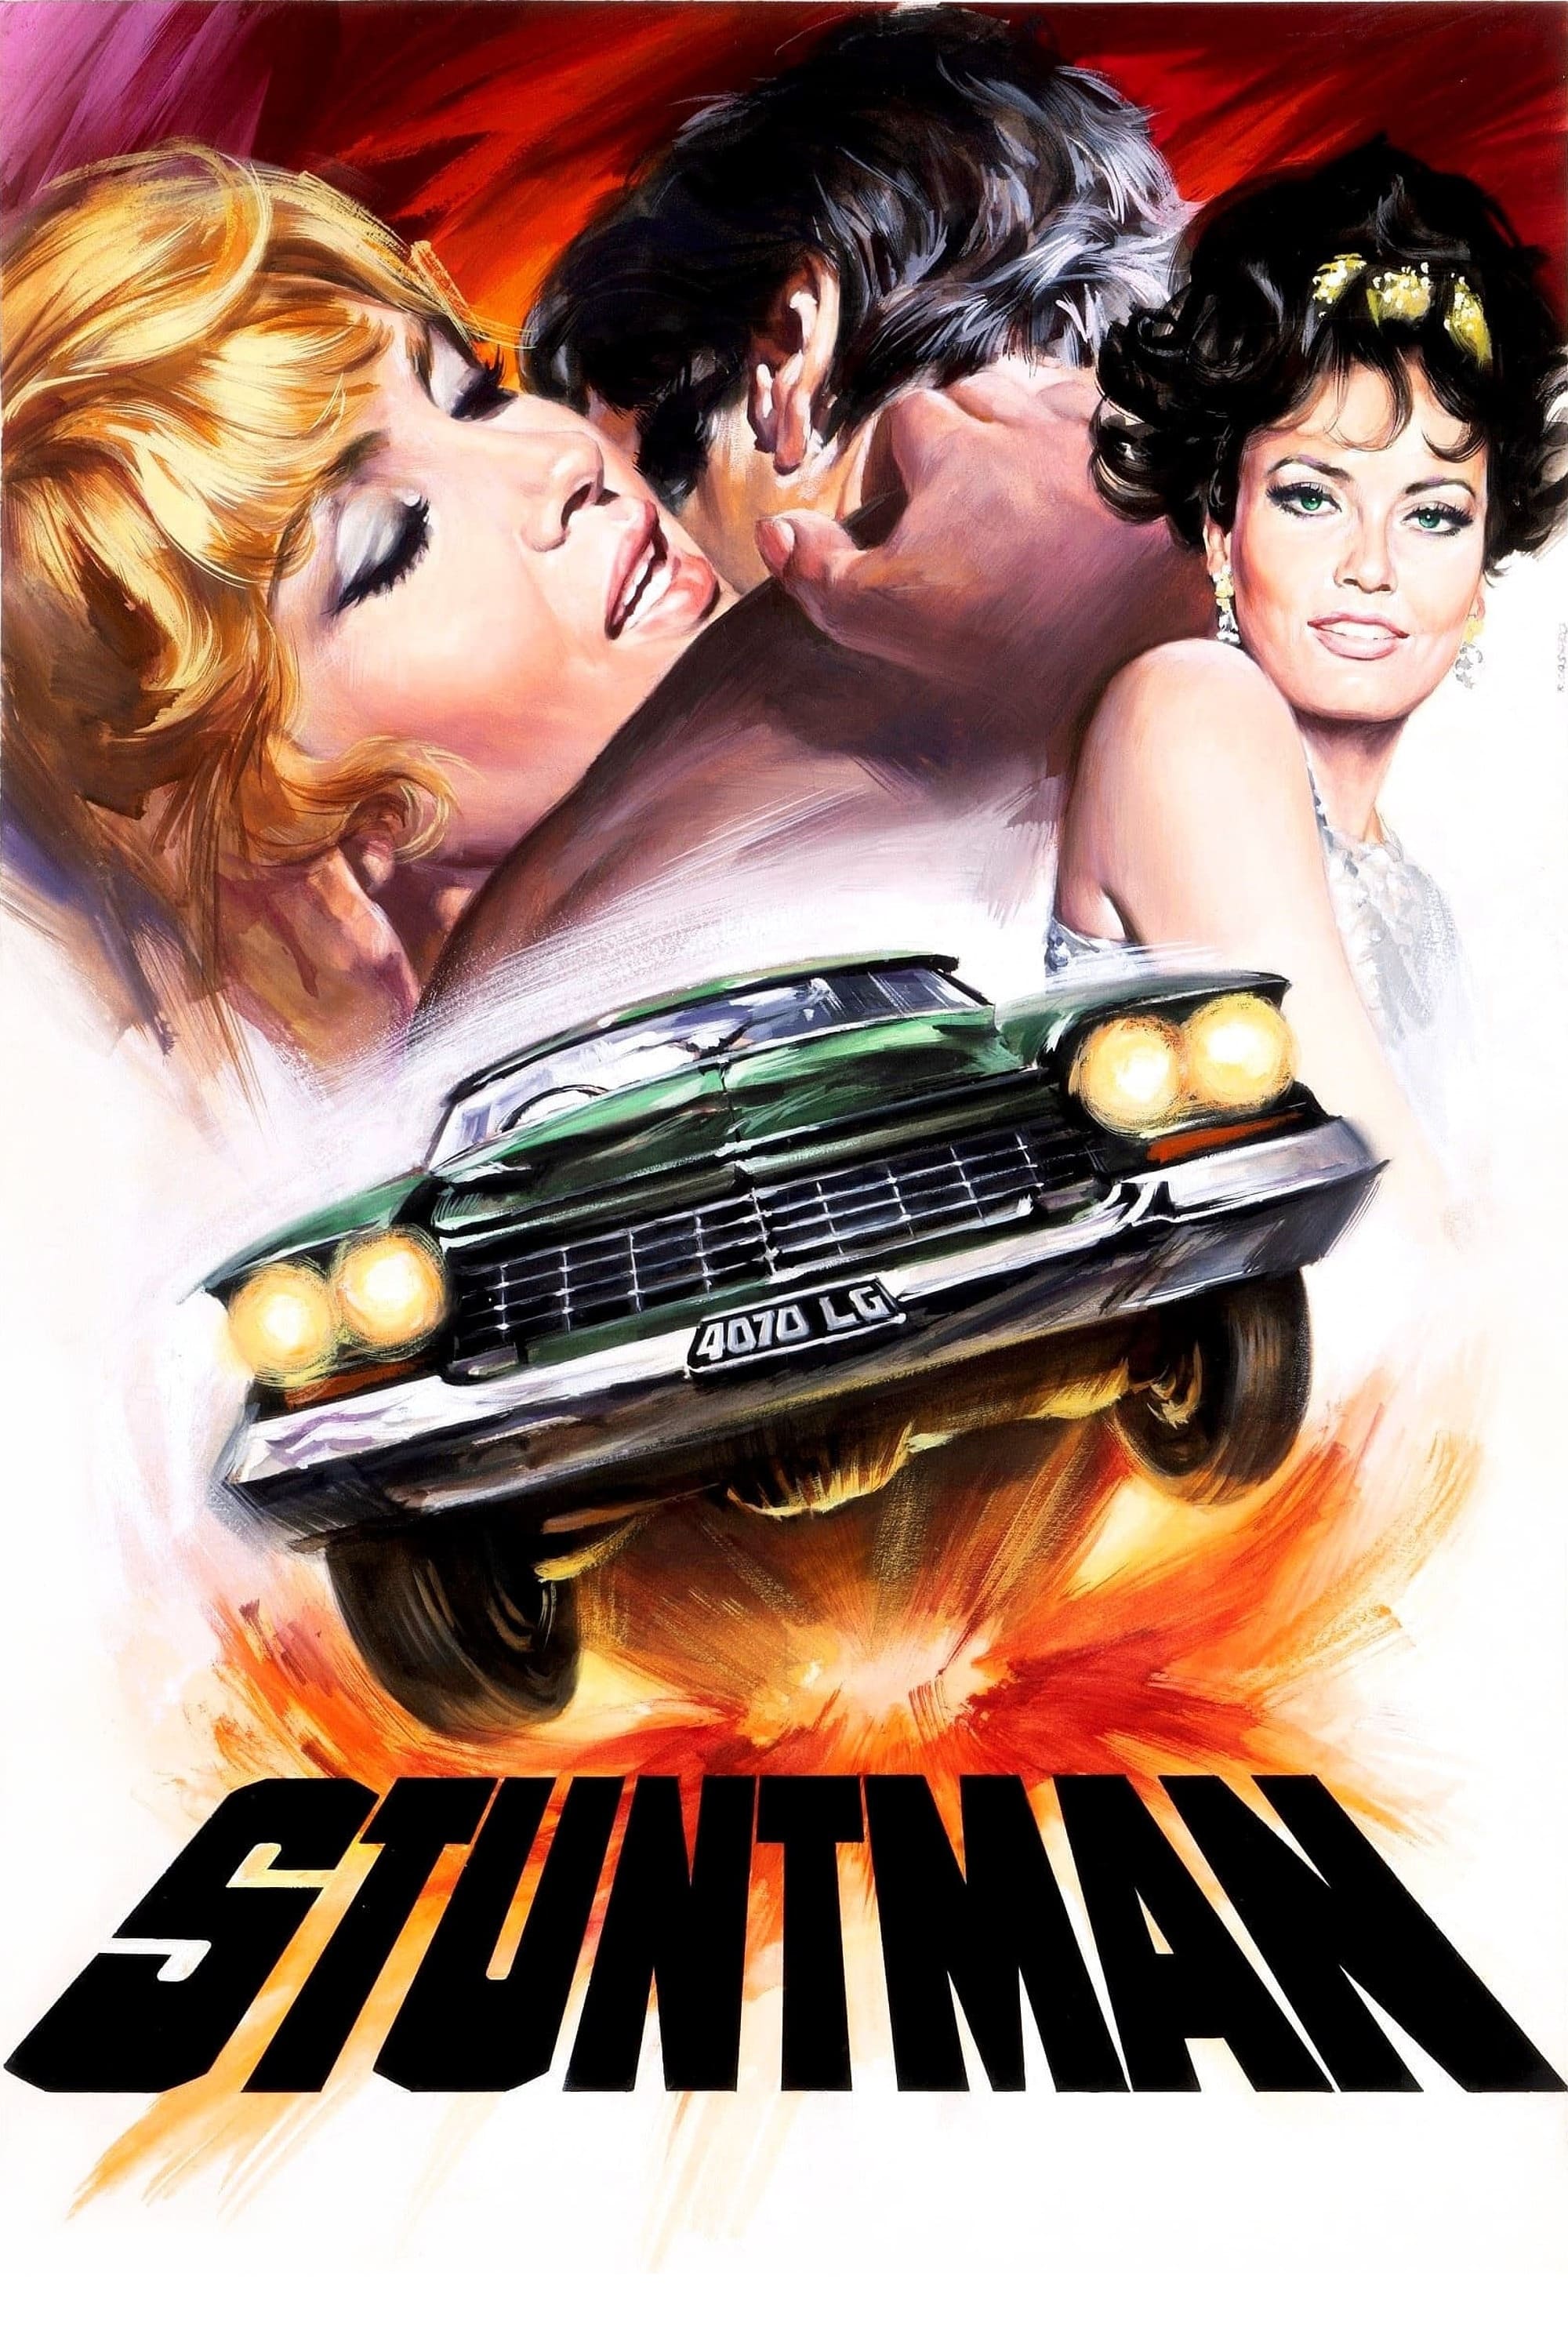 Stuntman (1968)